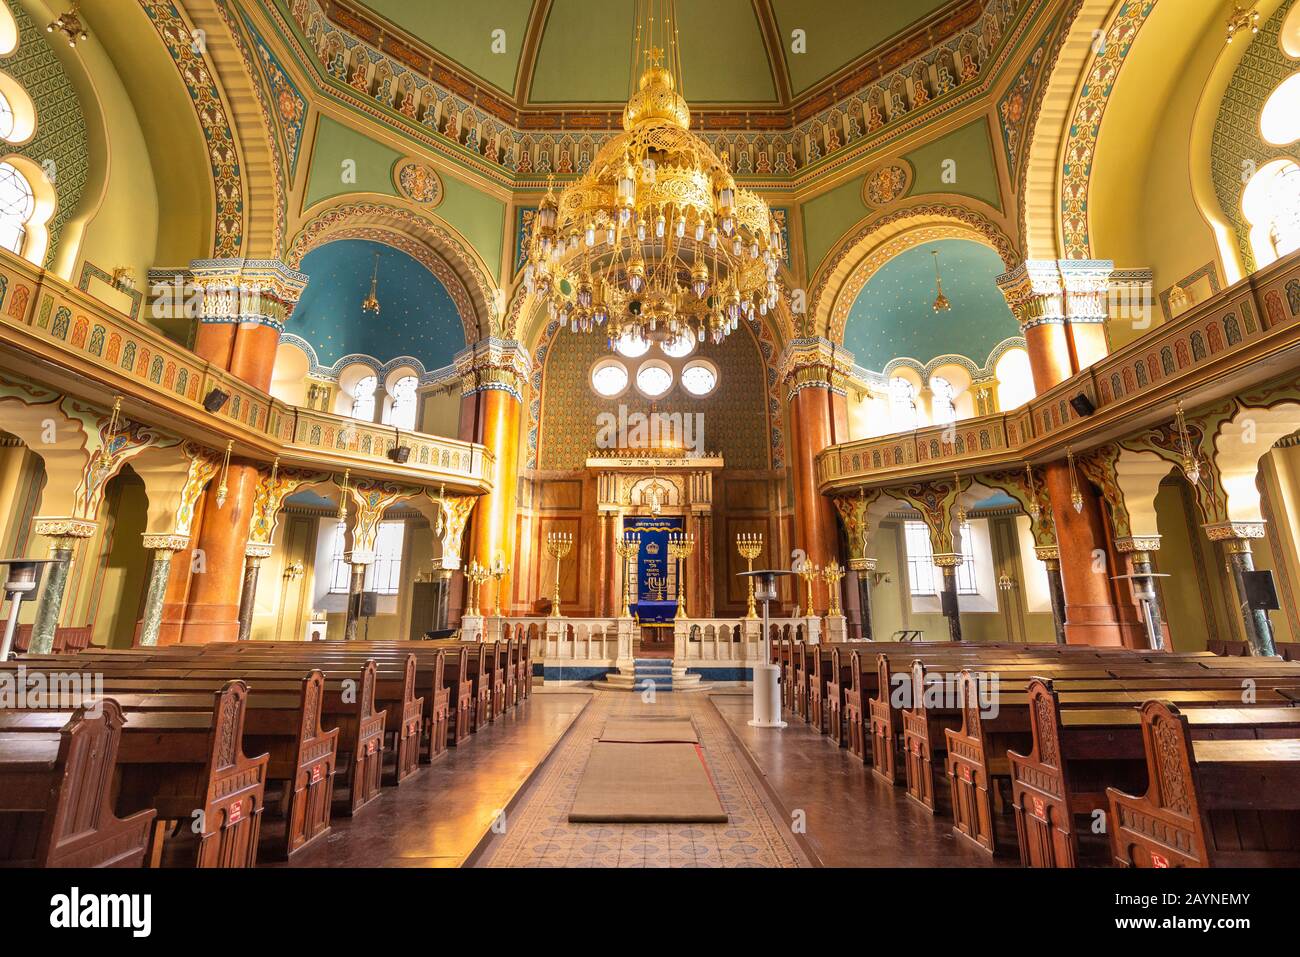 Interior of Sofia Synagogue, Bulgaria Stock Photo